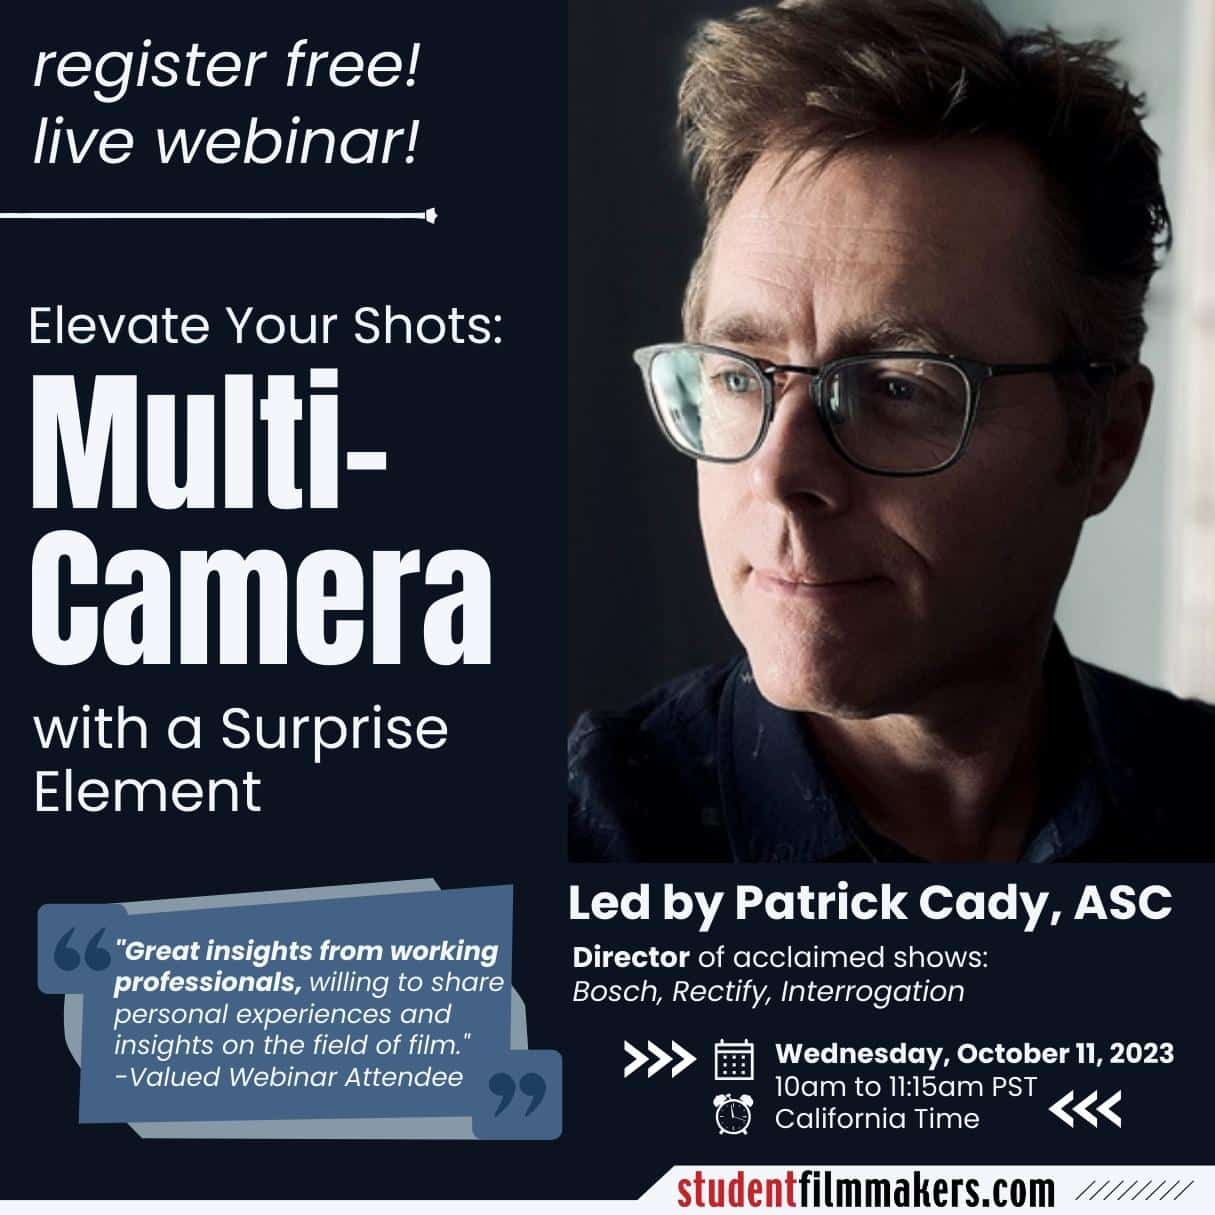 Patrick-Cady-ASC_Director-TV-Film_Webinar-Multi-Camera_StudentFilmmakers.jpg